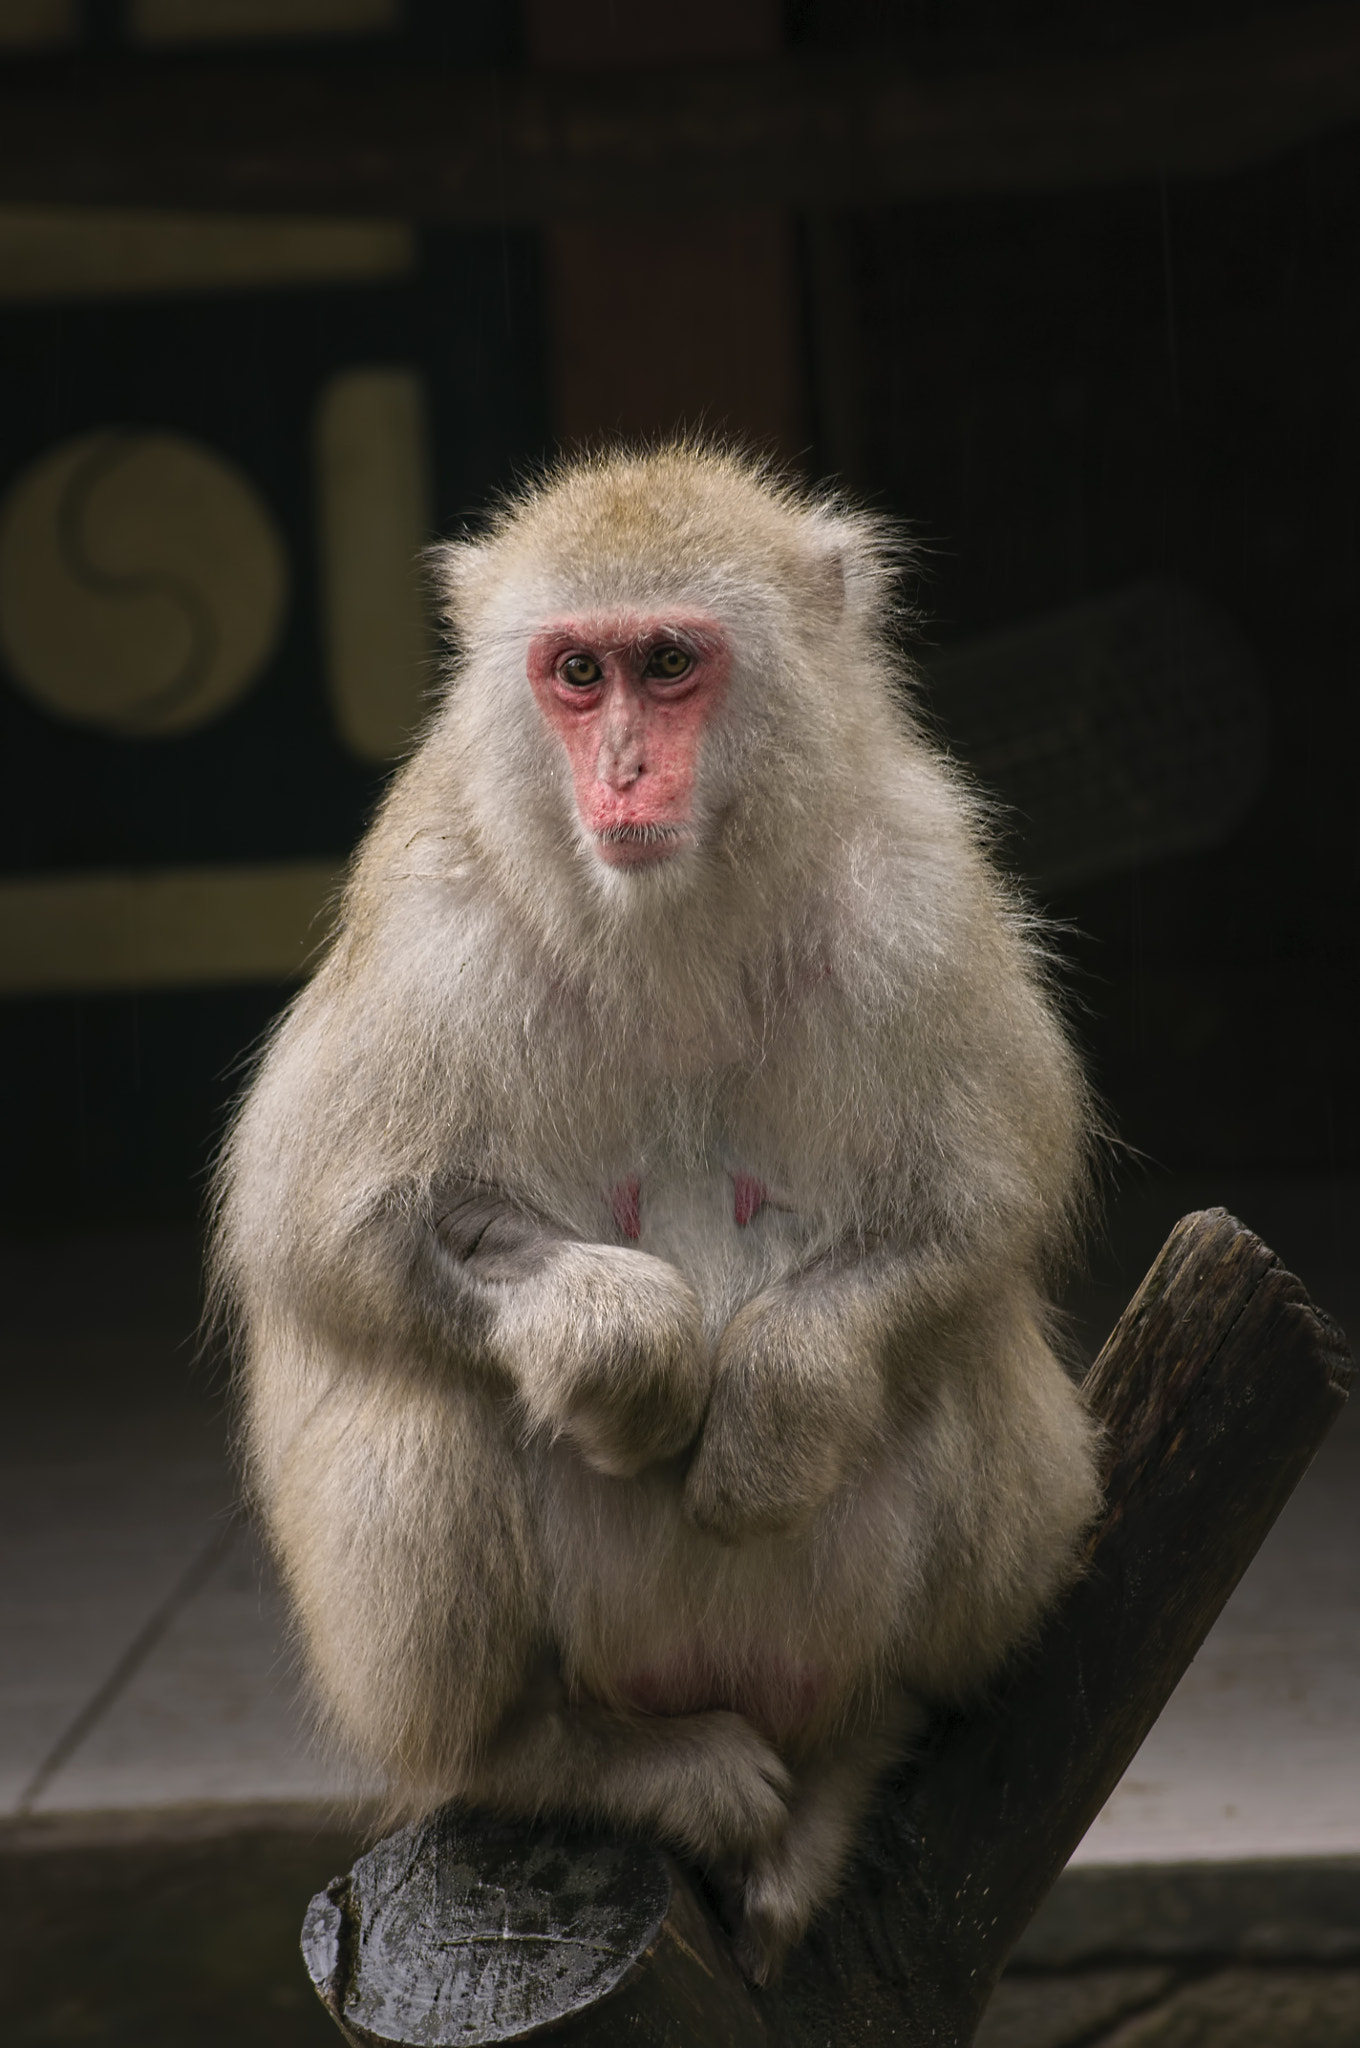 AF Zoom-Nikkor 75-300mm f/4.5-5.6 sample photo. Japanese monkey photography